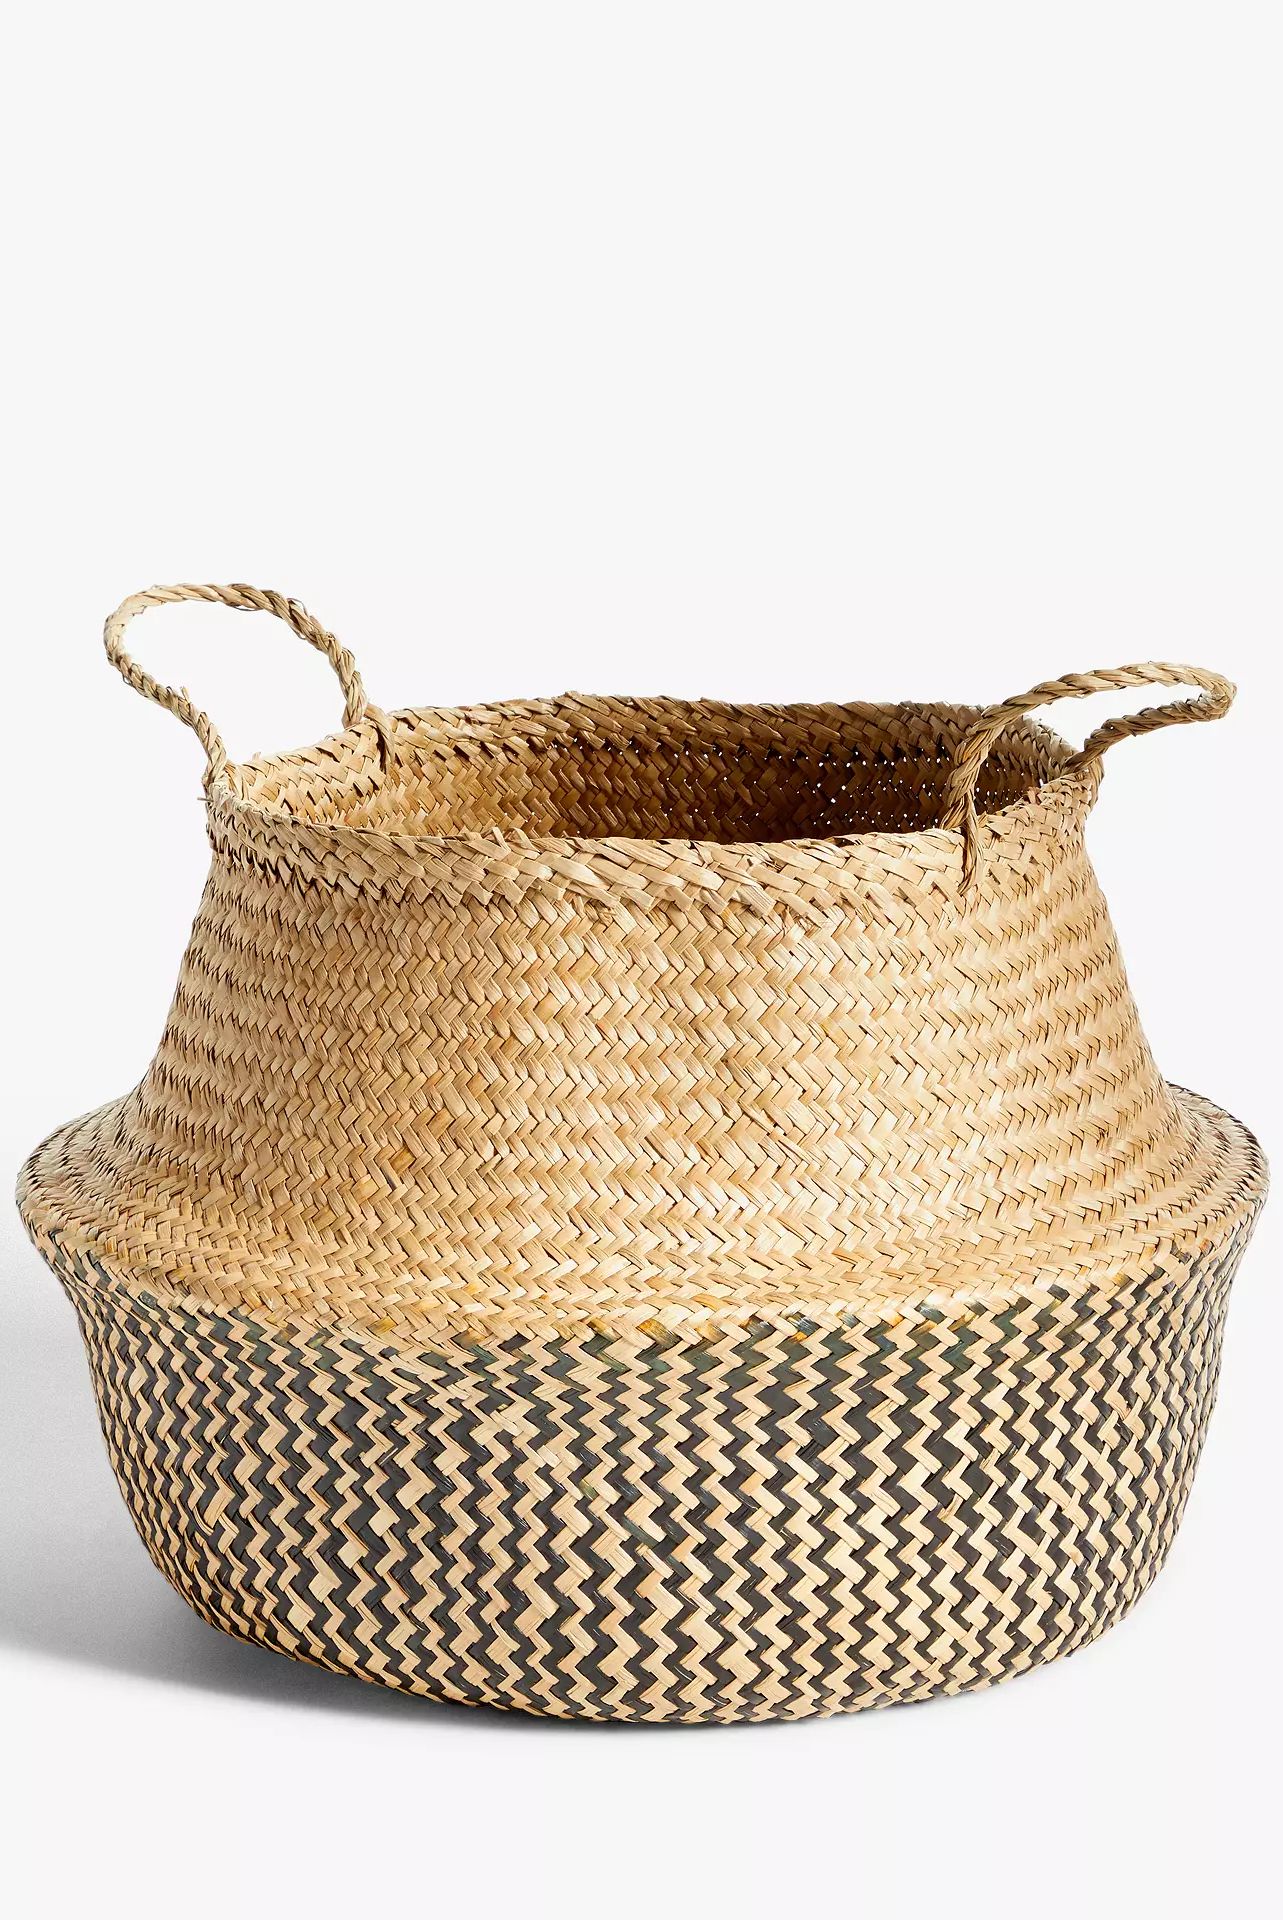 John Lewis seagrass basket